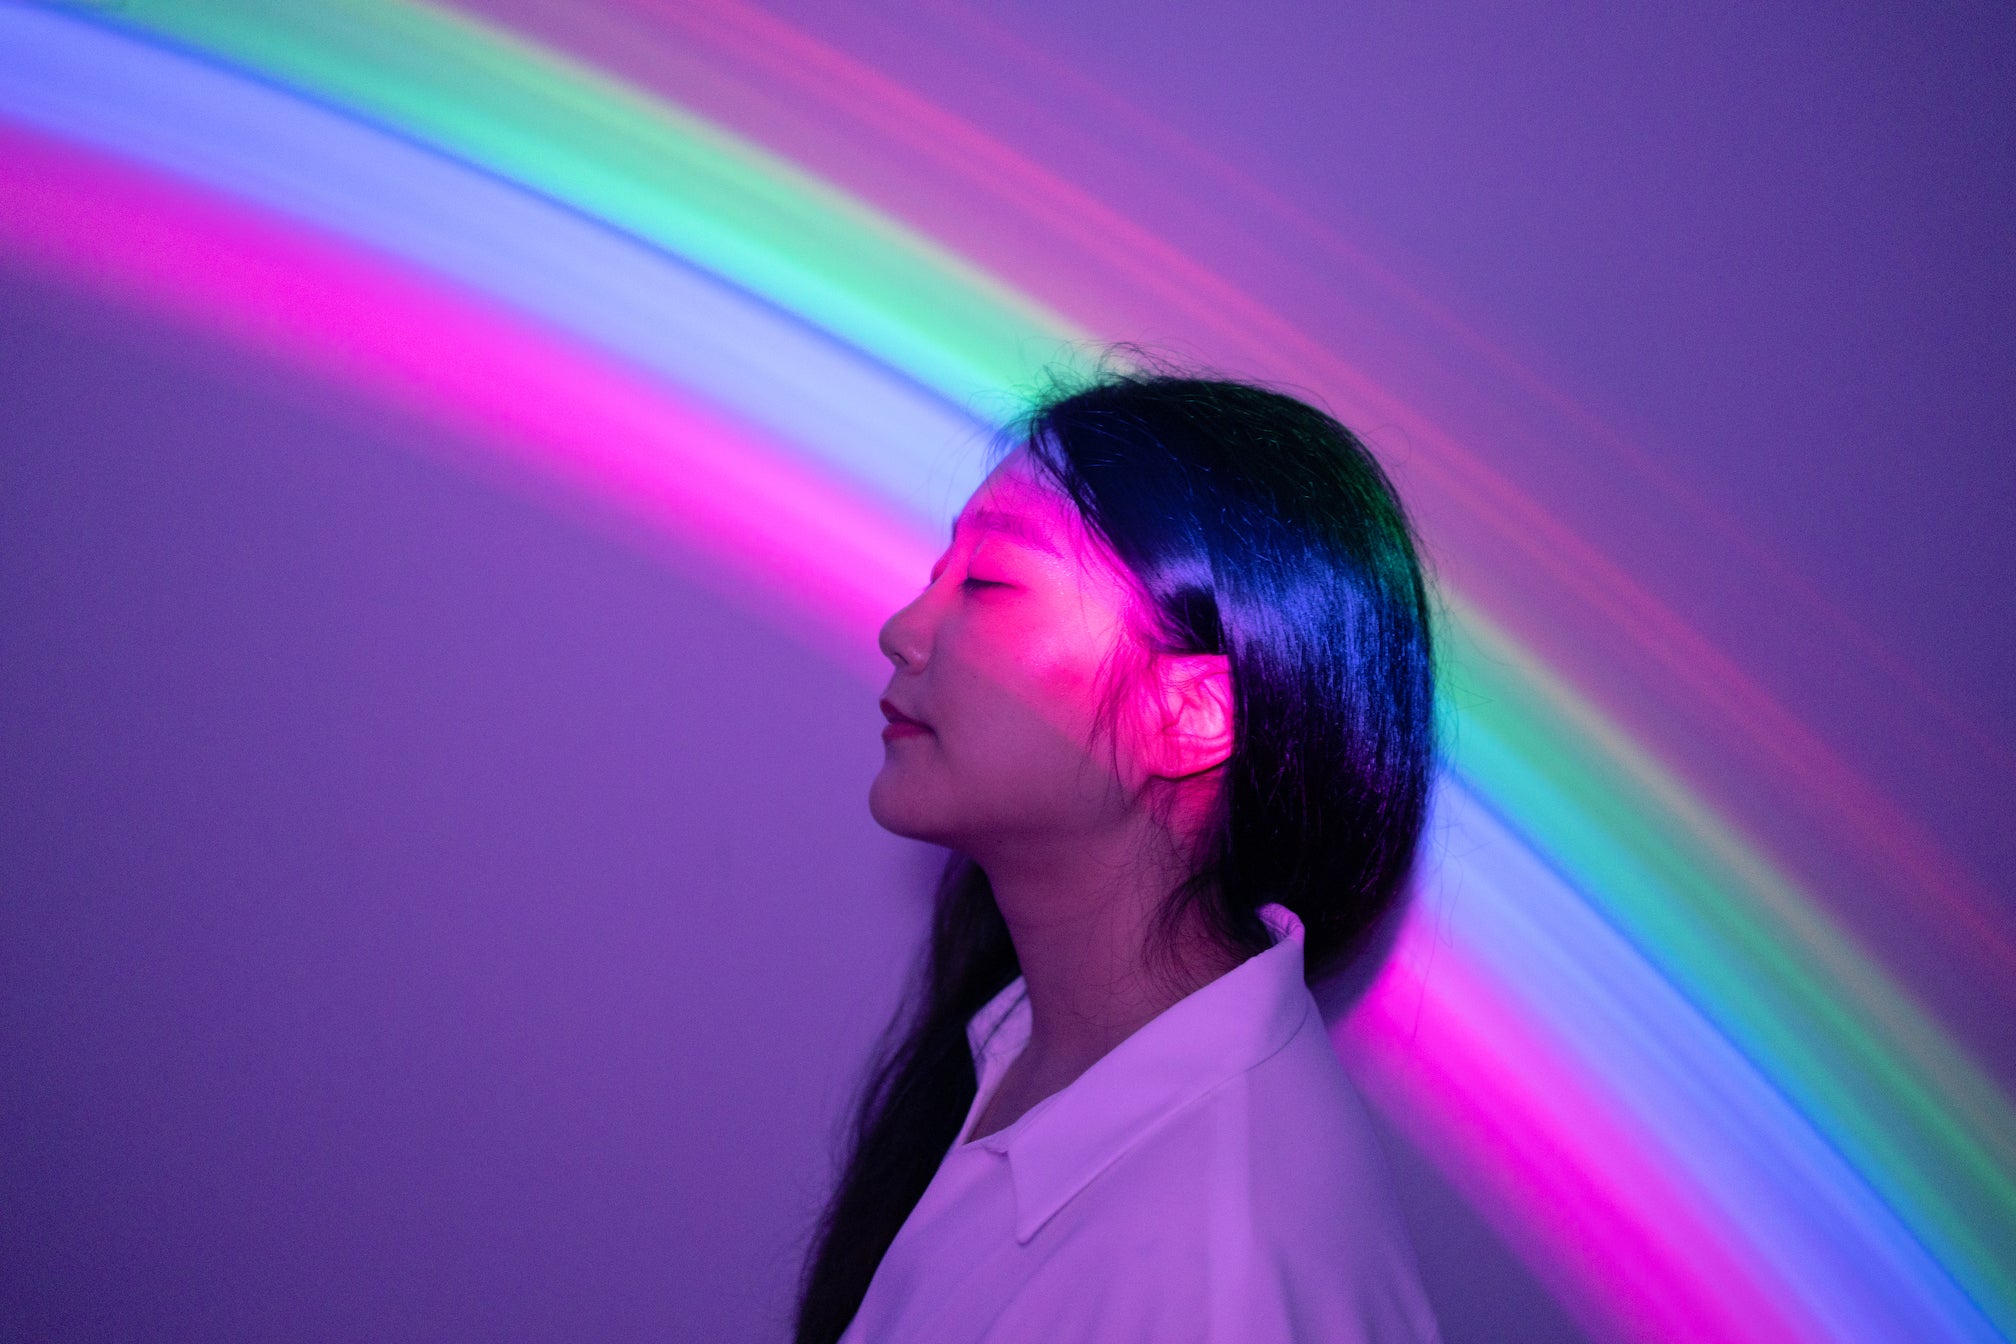 Regenbogenlichter scheinen über den Kopf einer jungen Frau als Symbol für Inspiration.